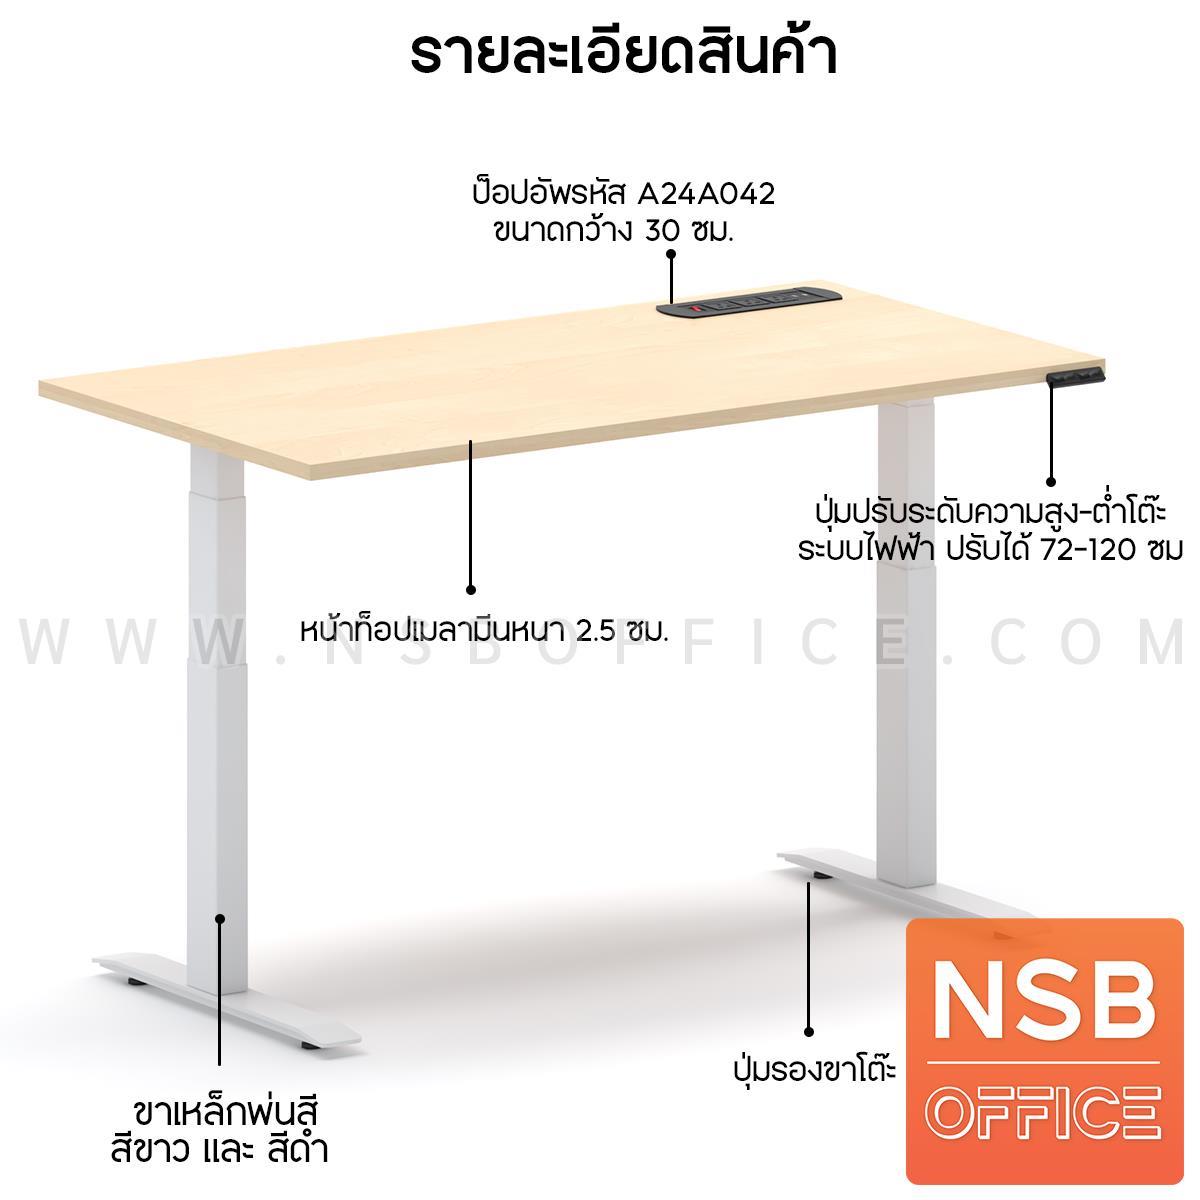 ชุดโต๊ะทำงานปรับระดับพร้อมเก้าอี้เพื่อสุขภาพ   (Ergonomic Desk n